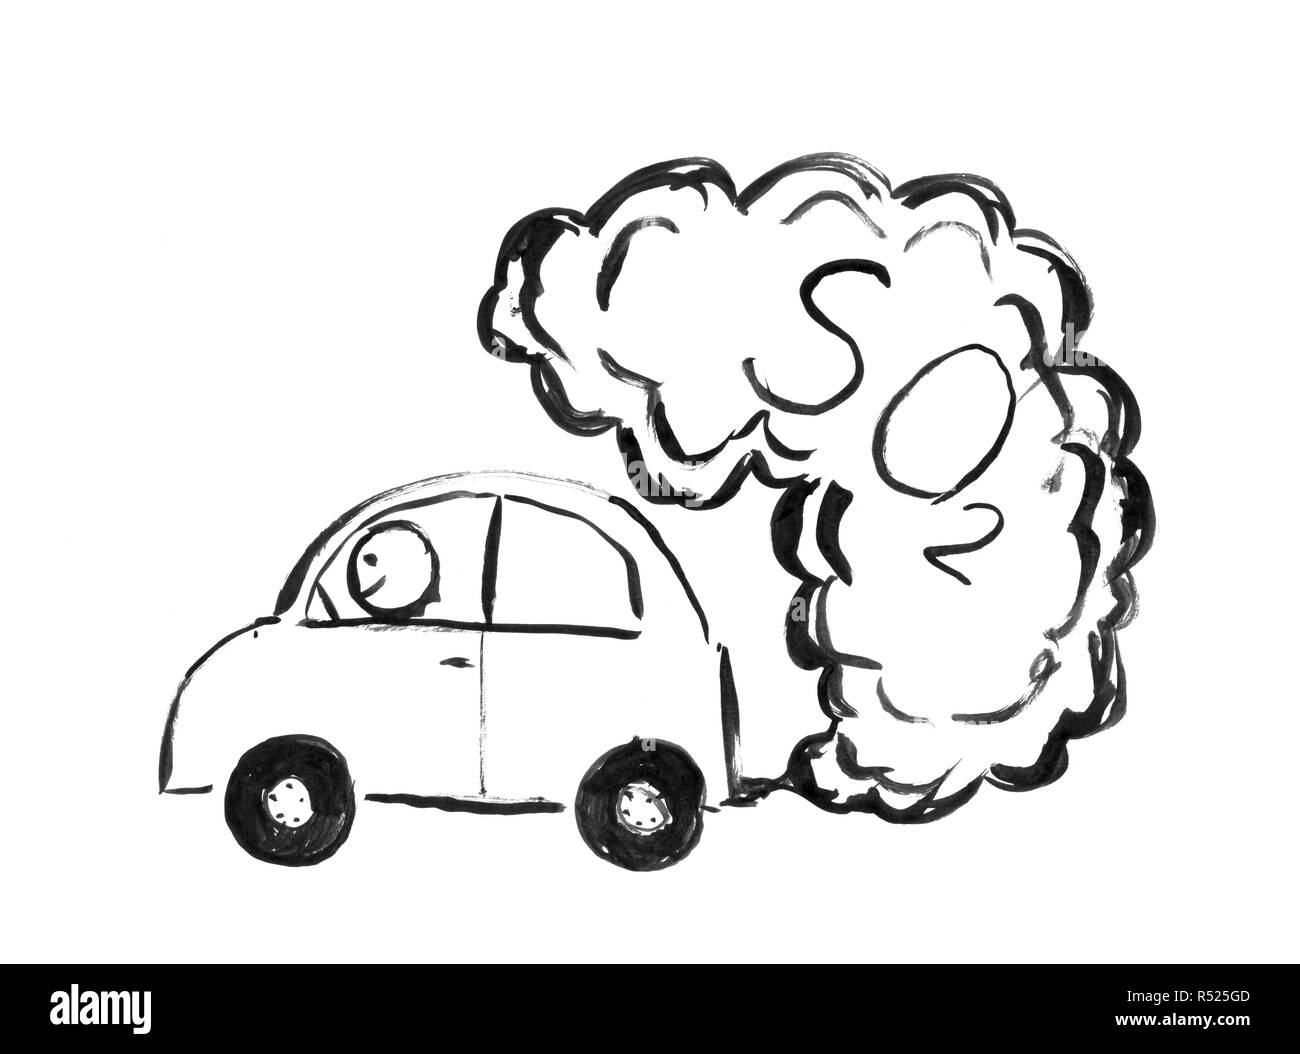 Inchiostro nero disegno a mano di auto la produzione di SO2 dell'inquinamento atmosferico Foto Stock